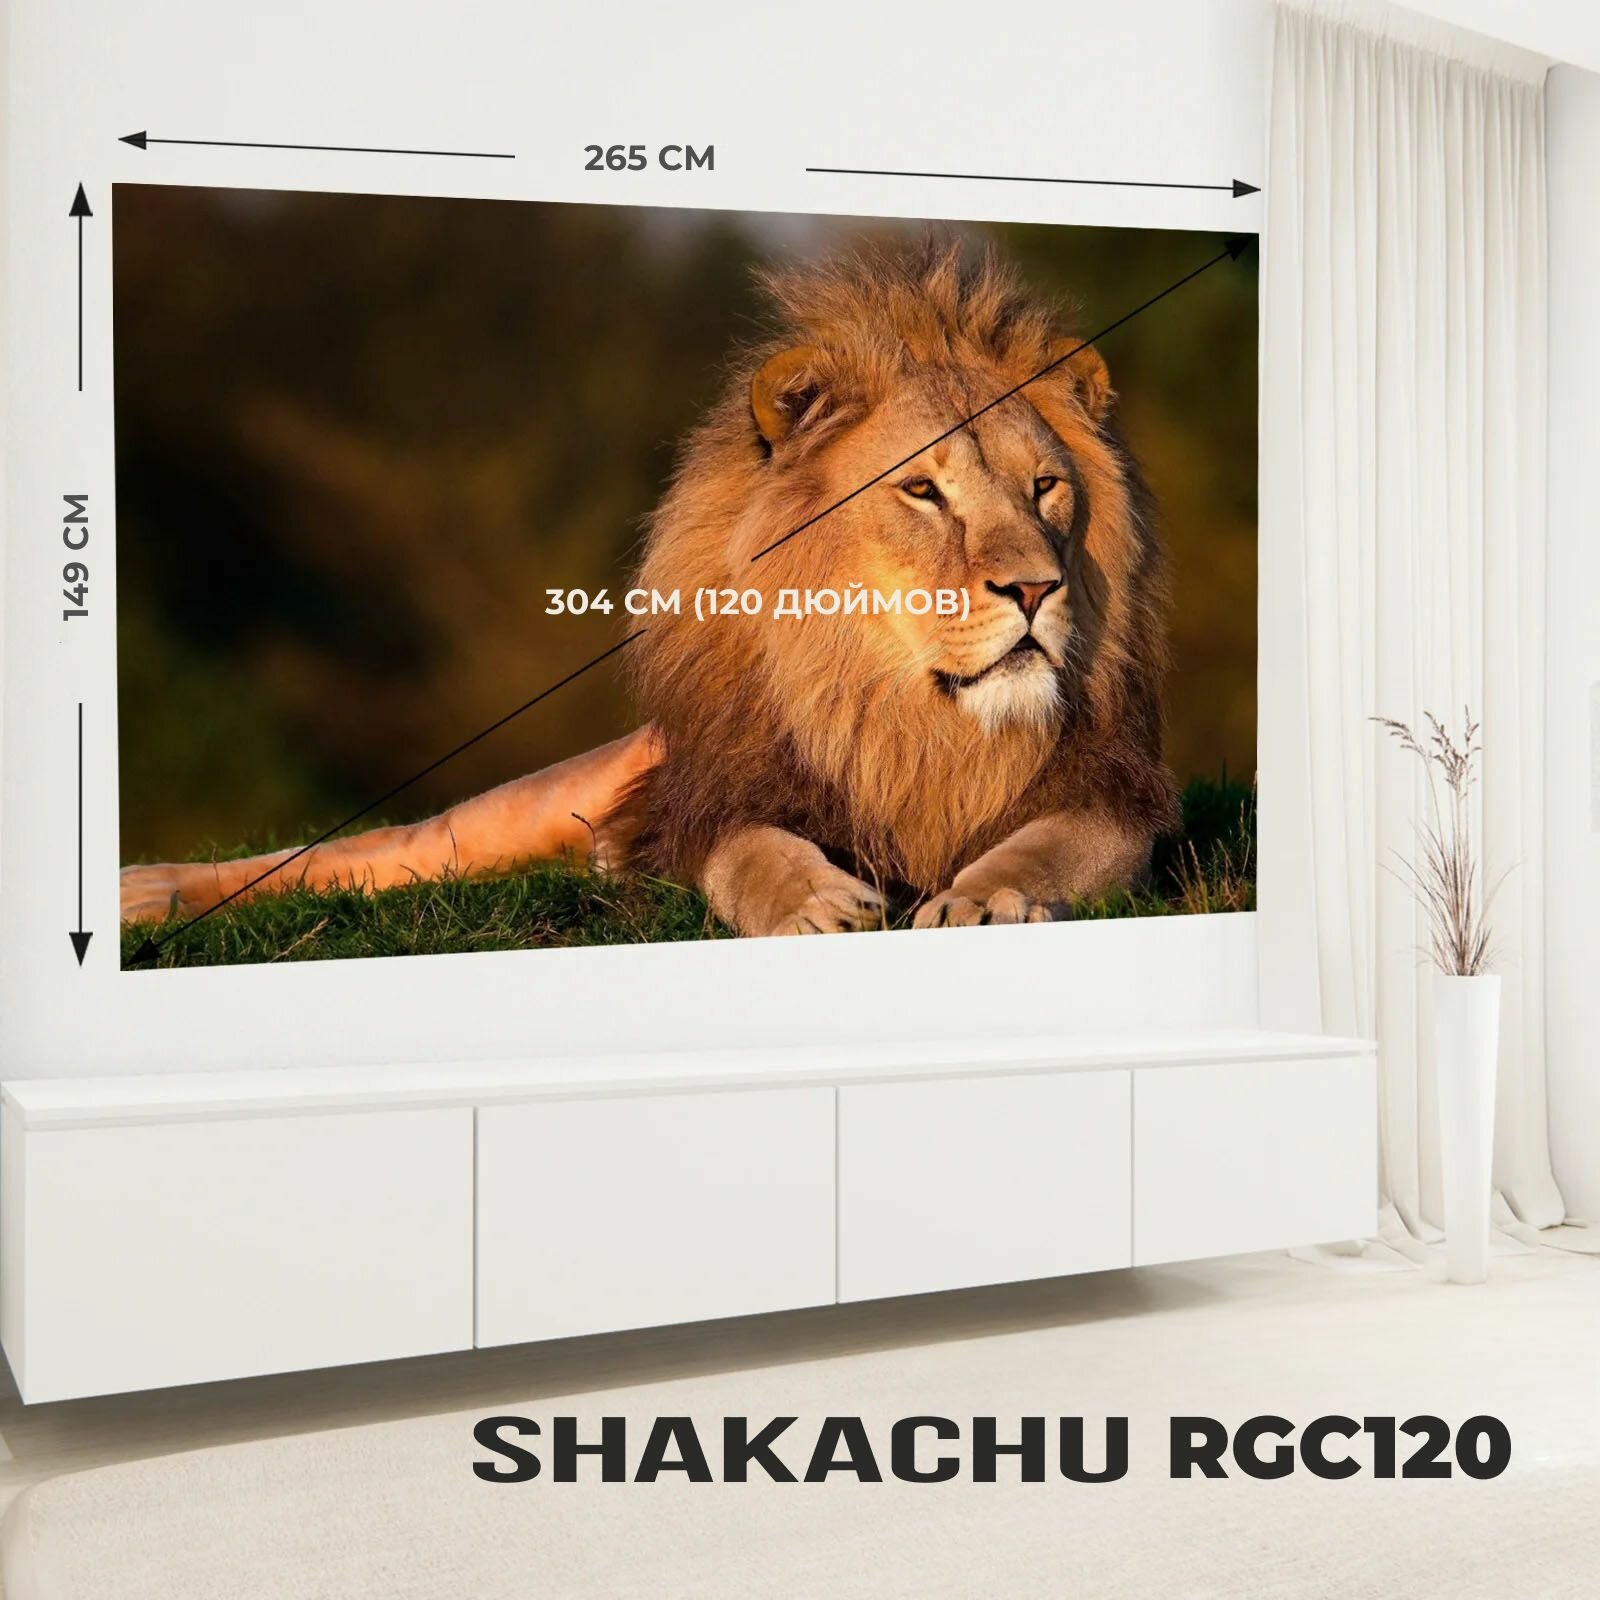 Экран для проектора Shakachu RGC120 светоотражающий в рулоне 120 дюймов серый полотно для проектора 16:9 (265х179 см)